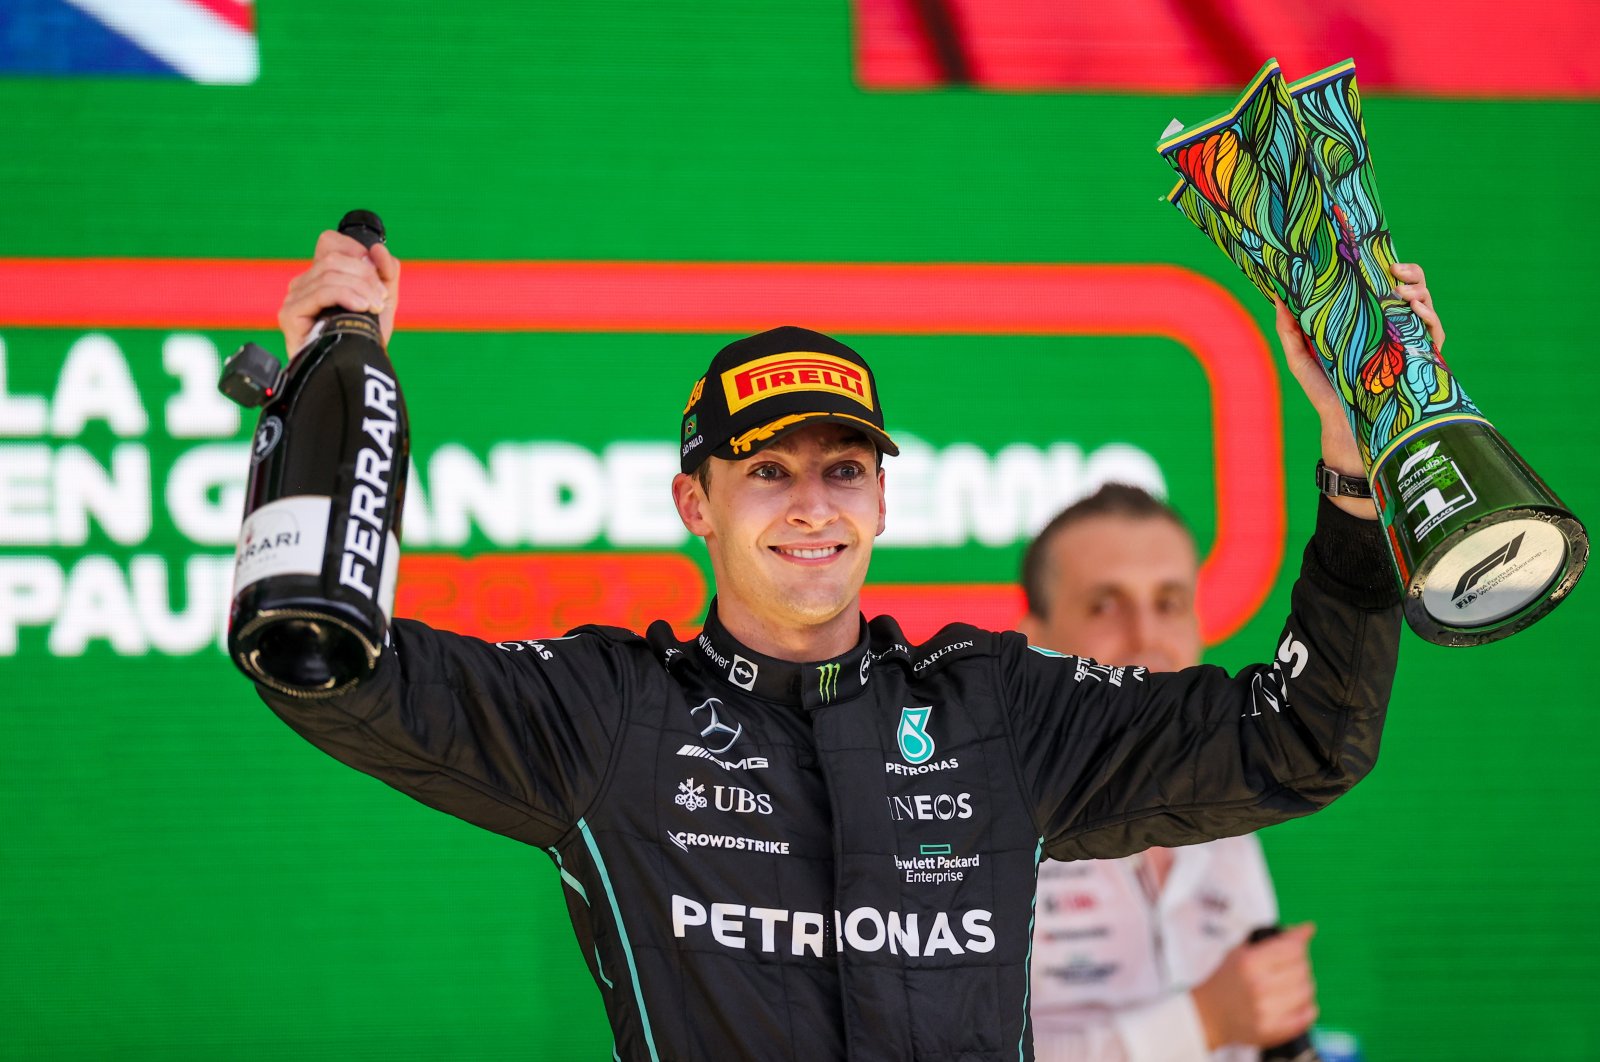 Air mata kegembiraan saat Russell dari Mercedes merebut kemenangan pertama GP F1